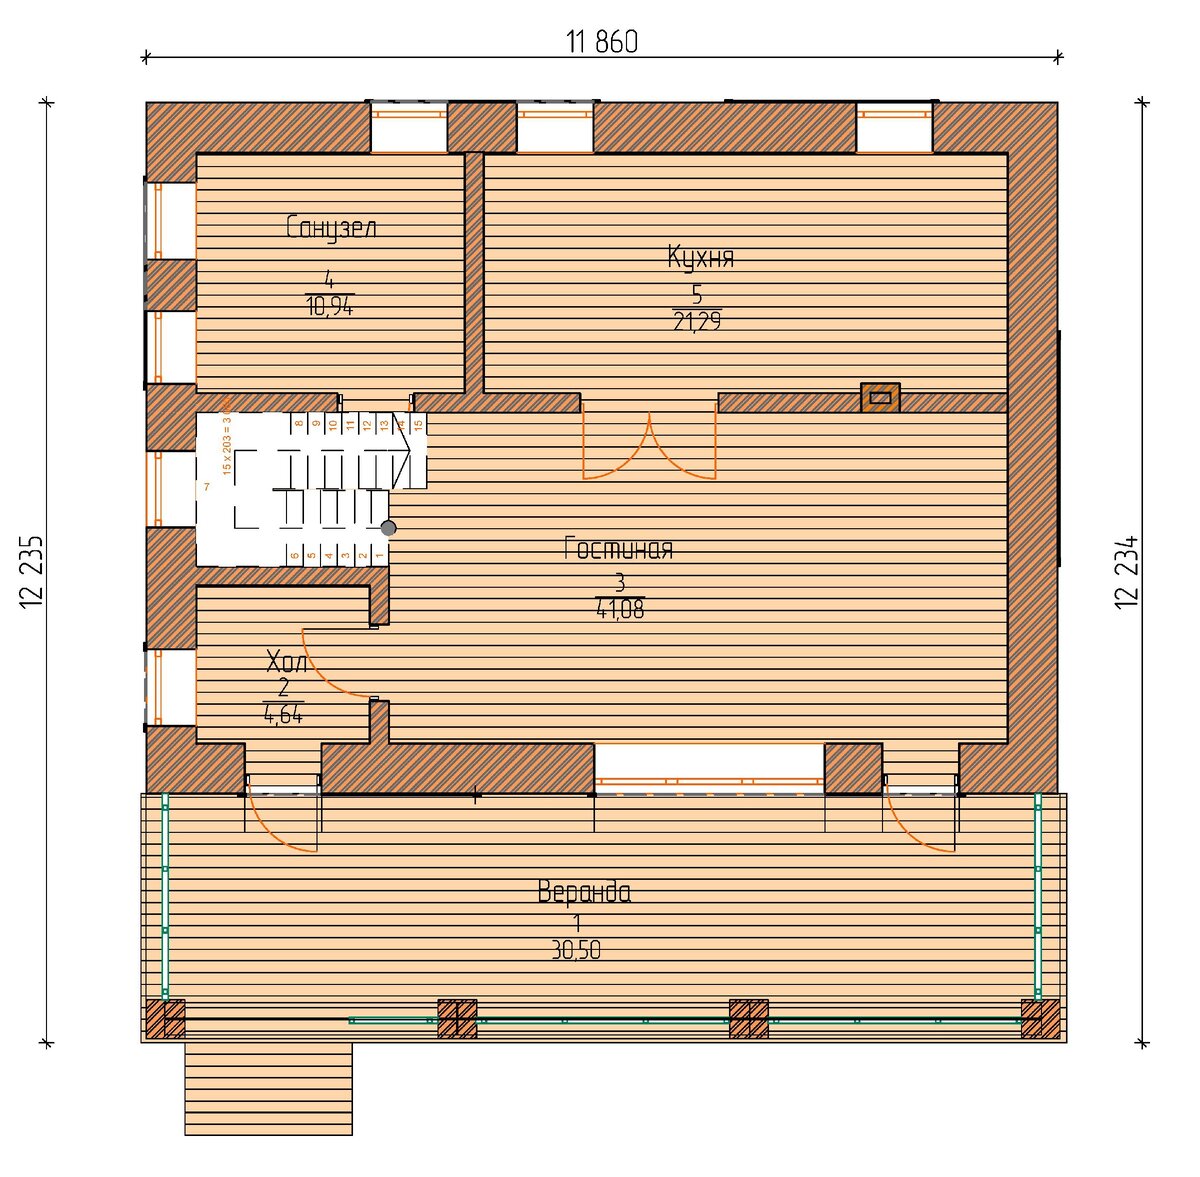 Как из бани сделать двухэтажный дом 12 х12 м. Эскизный проект ??